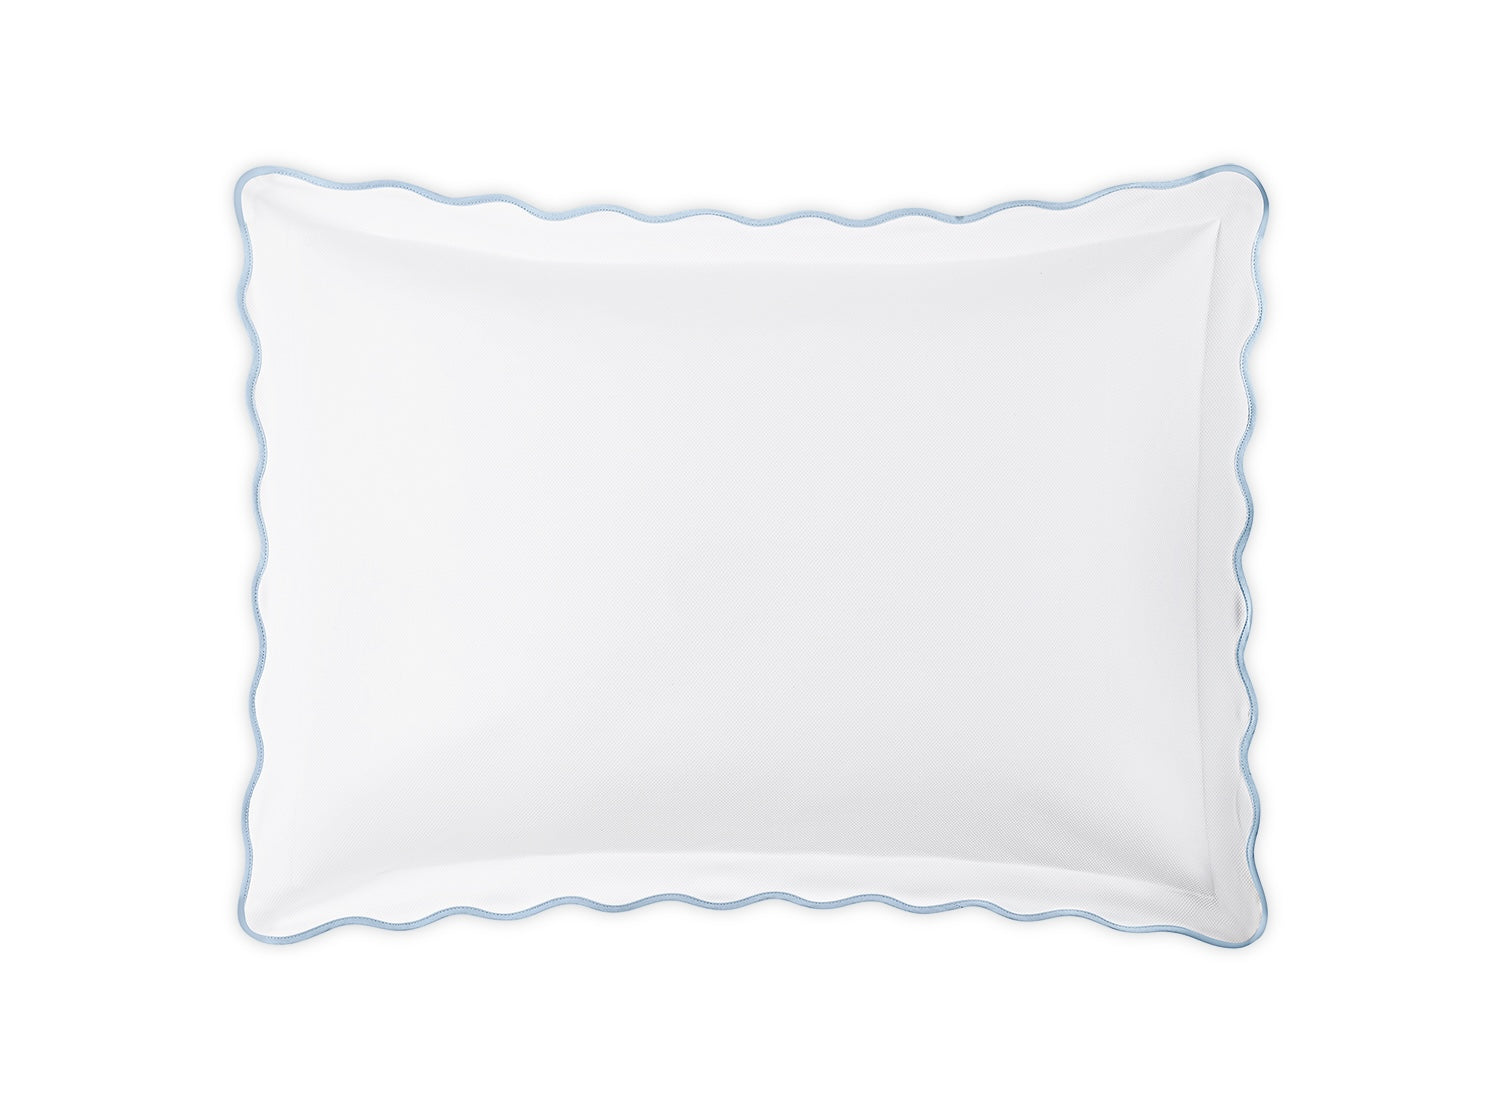 Pillow Sham - Matouk Camila Pique Light Blue Bedding at Fig Linens and Home